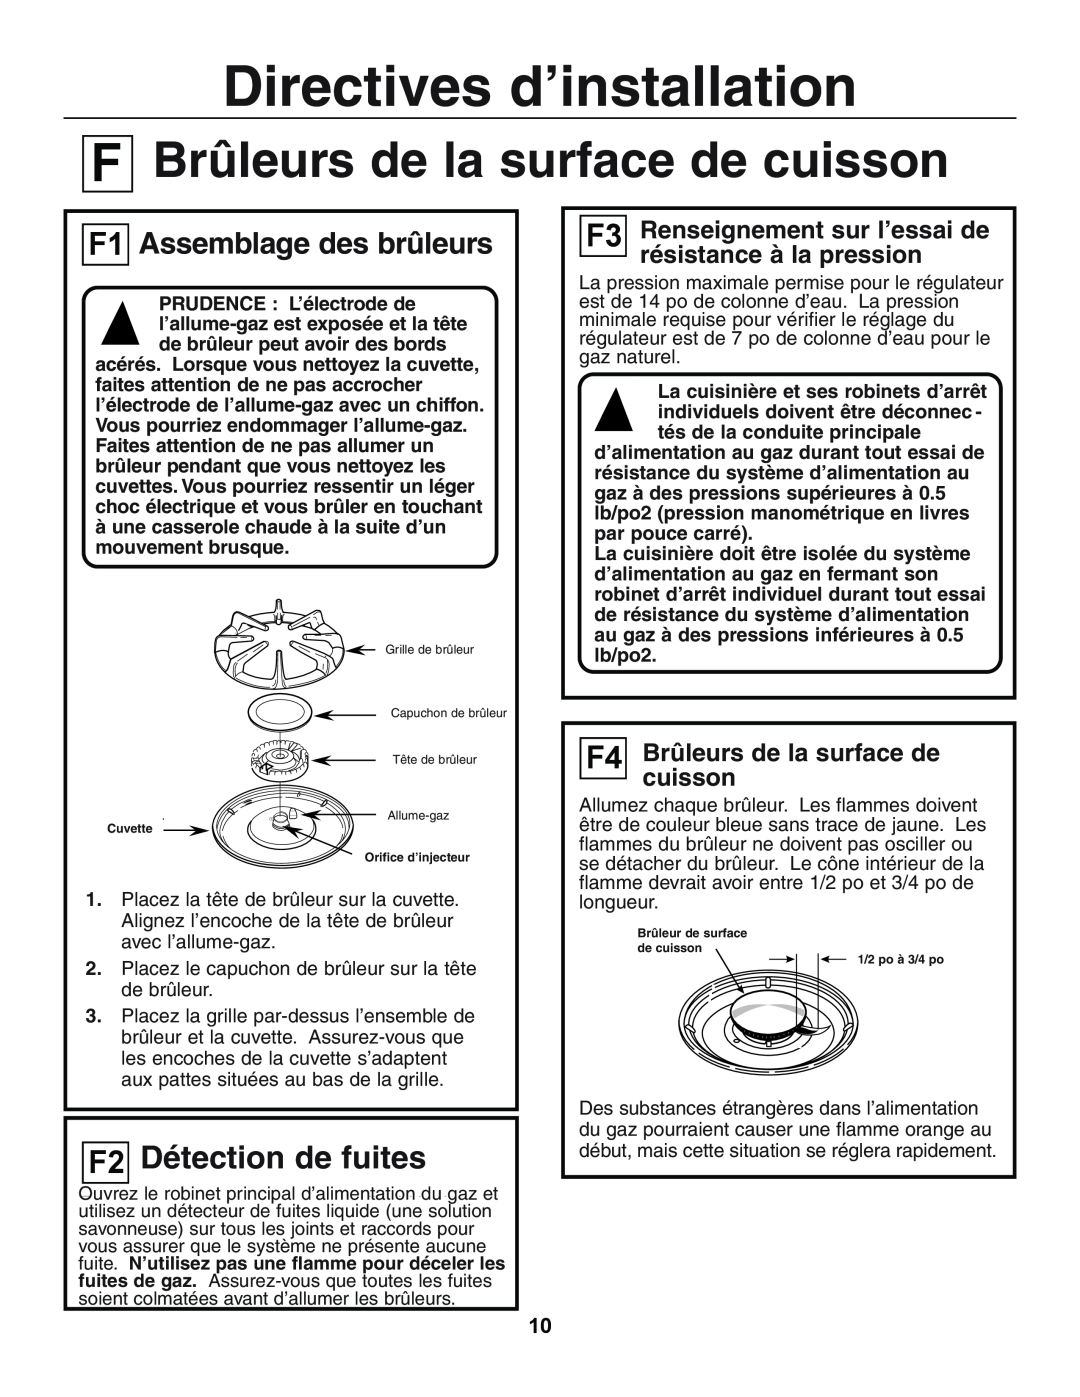 GE JGSP23 manual About the Cooktop Burners, Brûleurs de la surface de, cuisson, F1 AssemblageAss bling ThedesBubrûleursners 